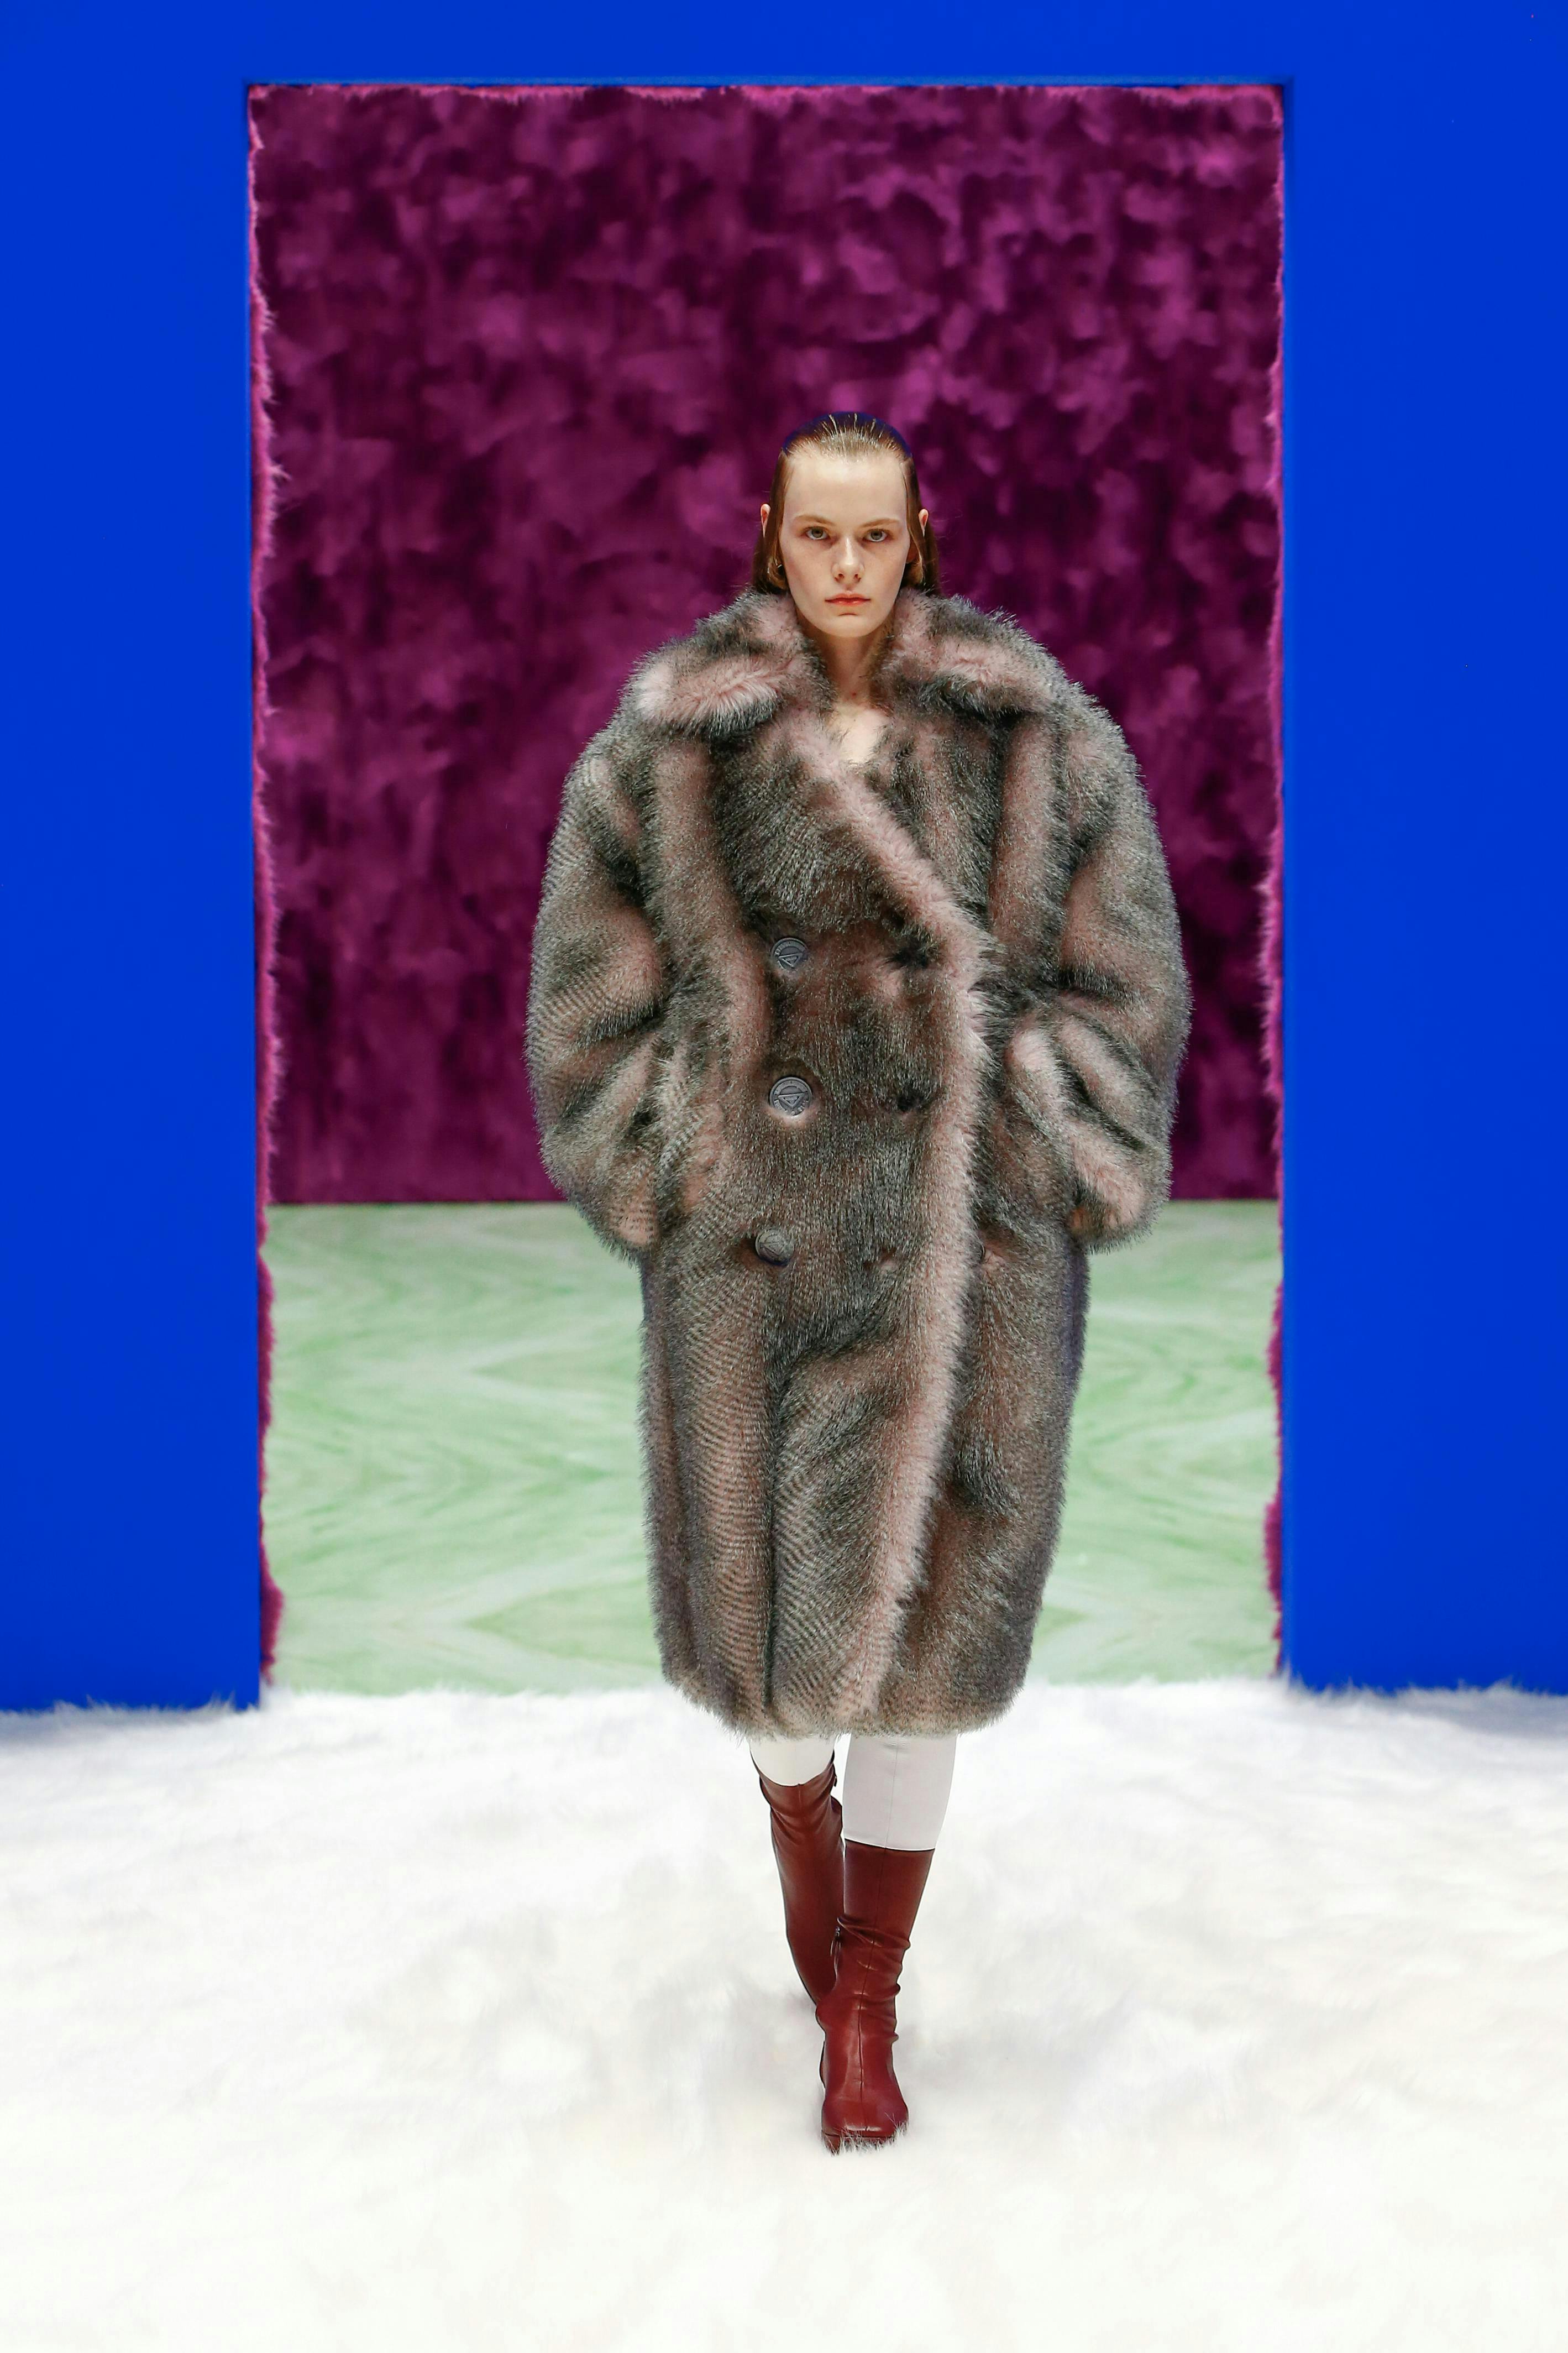 clothing apparel person human fur coat